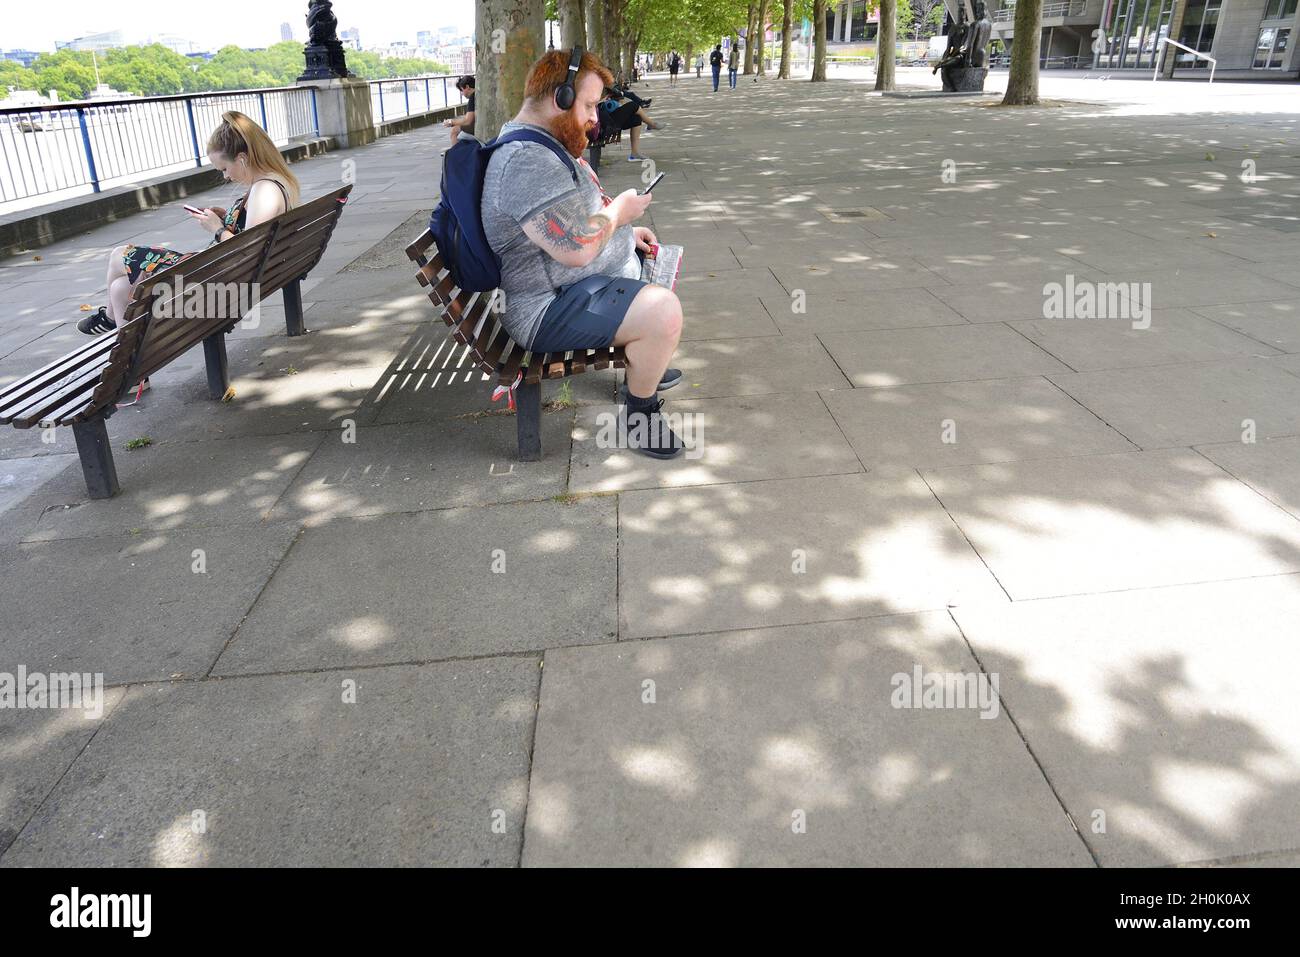 Londres, Angleterre, Royaume-Uni.Homme avec une barbe rouge brouillée, portant un short, regardant son téléphone mobile sur la rive sud Banque D'Images